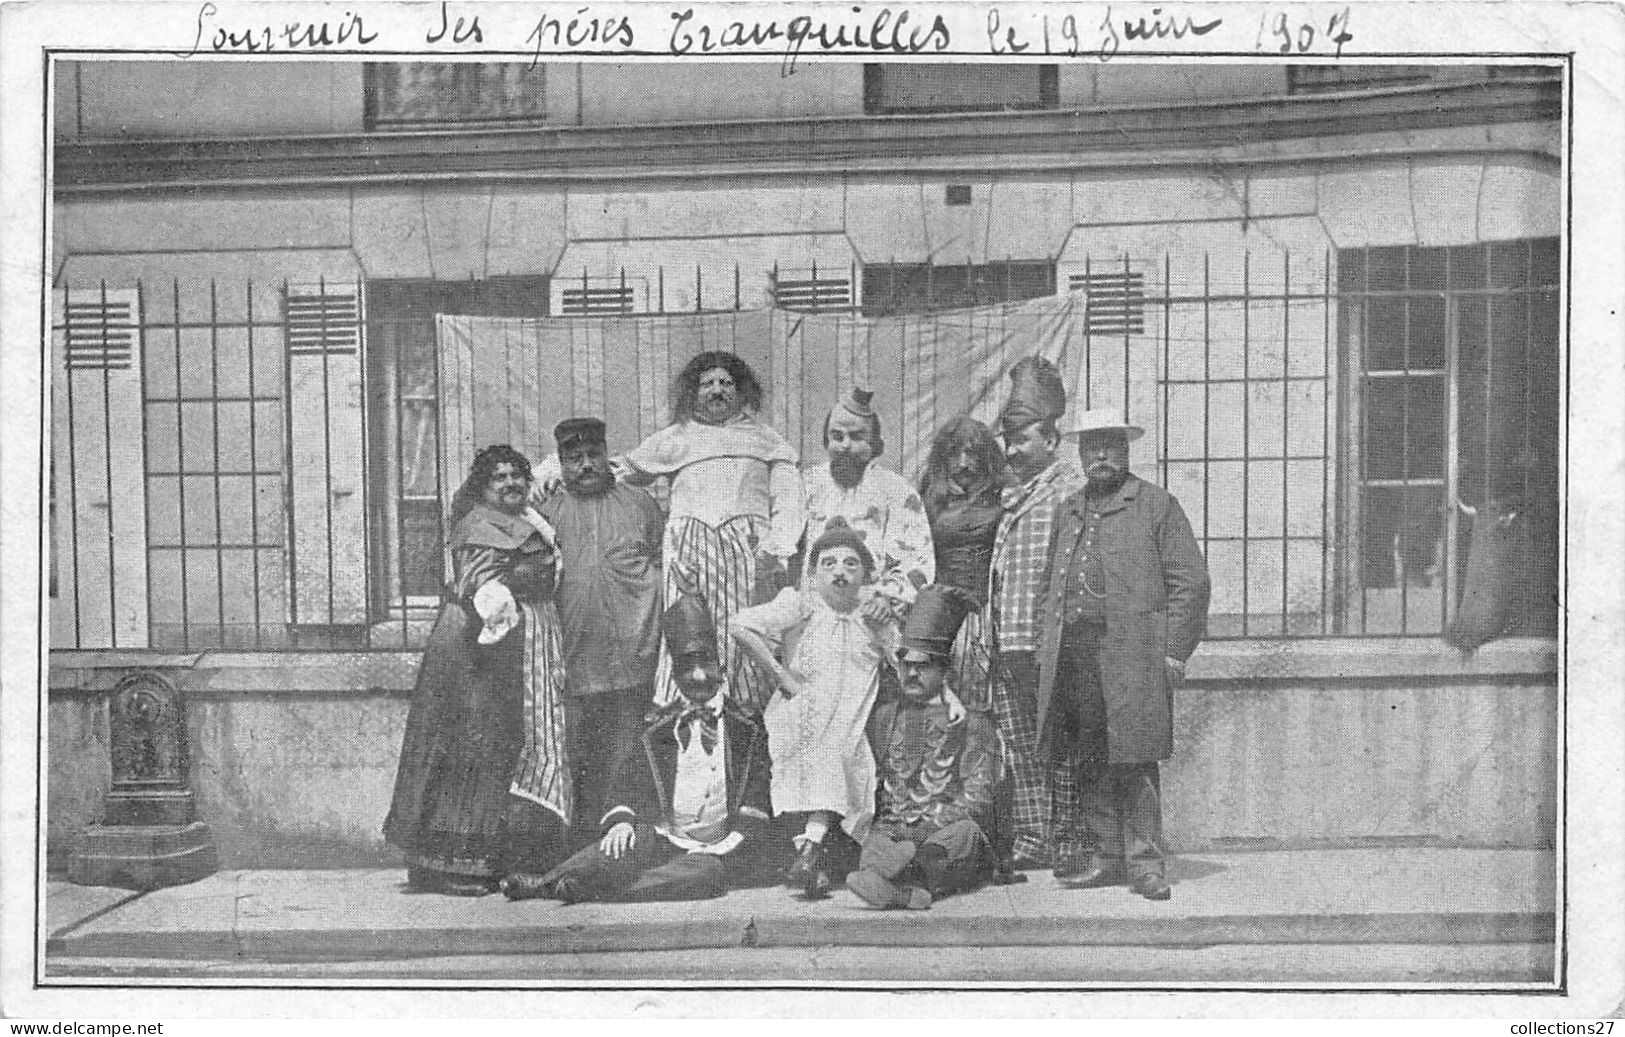 SOUVENIR DES PERES TRANQUILLES LE 19 JUIN 1907 - Circus